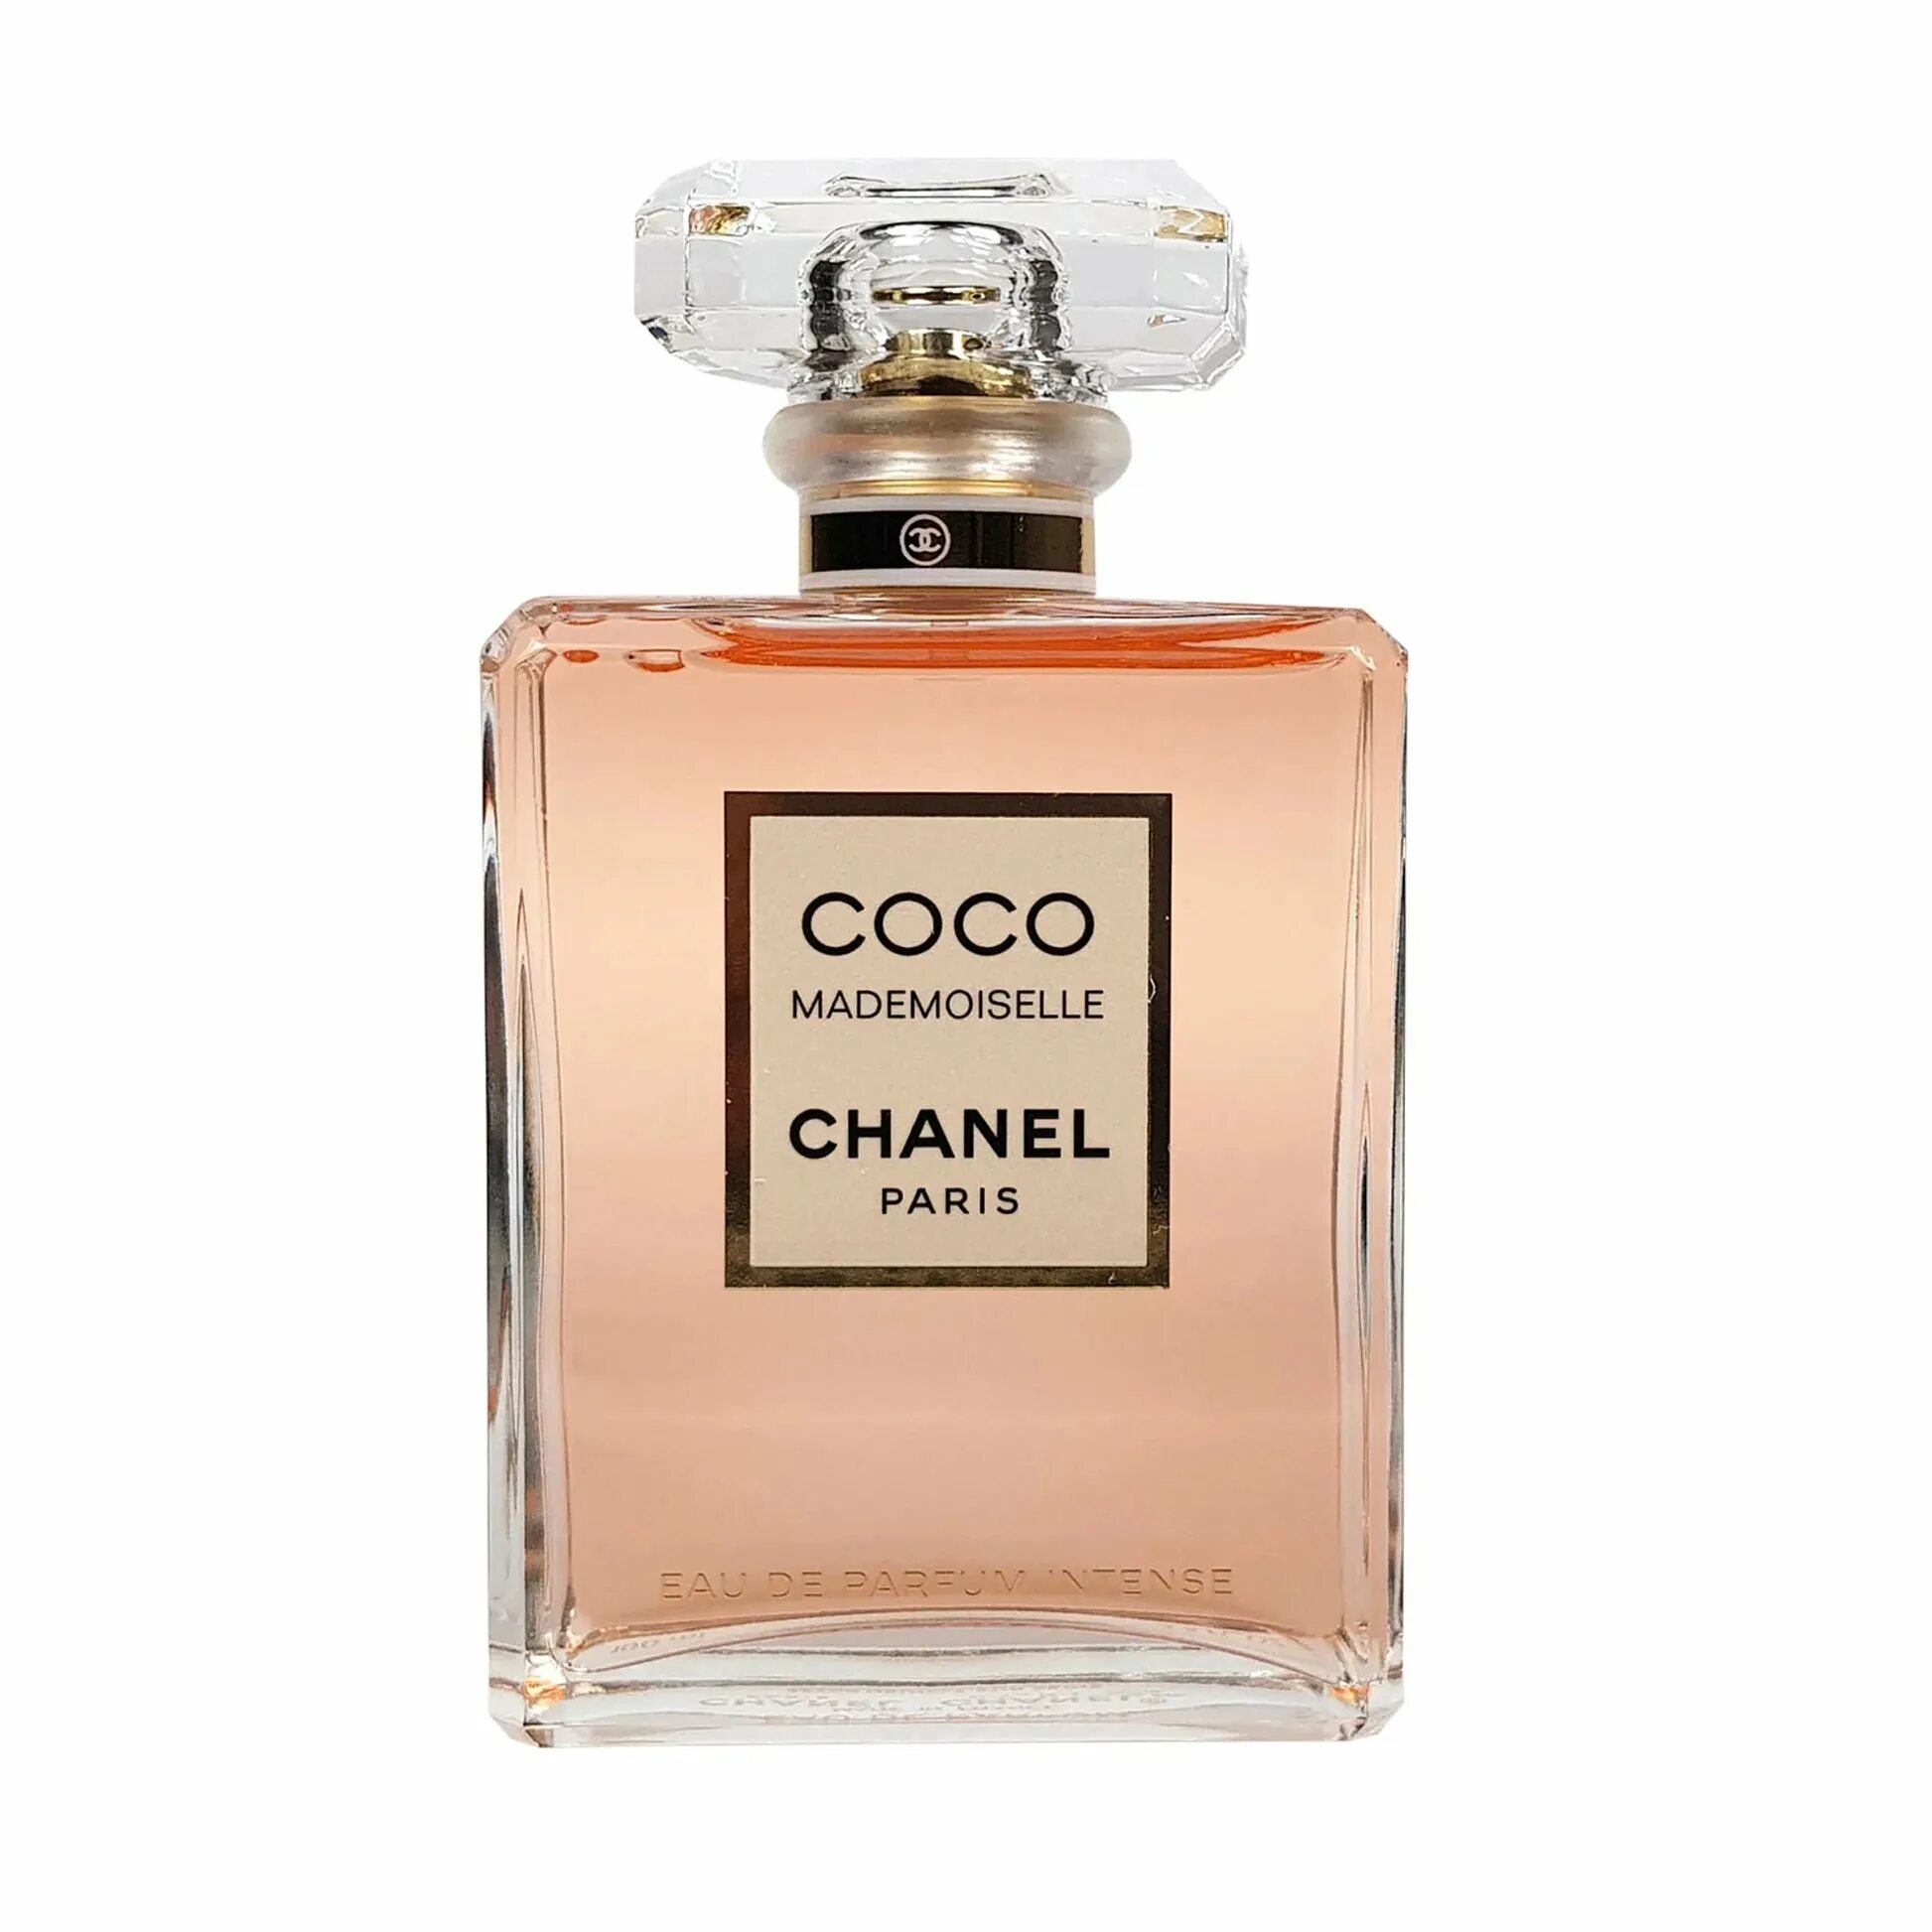 Коко Шанель мадмуазель 50 мл. Coco Mademoiselle Chanel 100ml. Chanel - Coco Mademoiselle EDP 100мл. Coco Chanel EDP 100 ml.